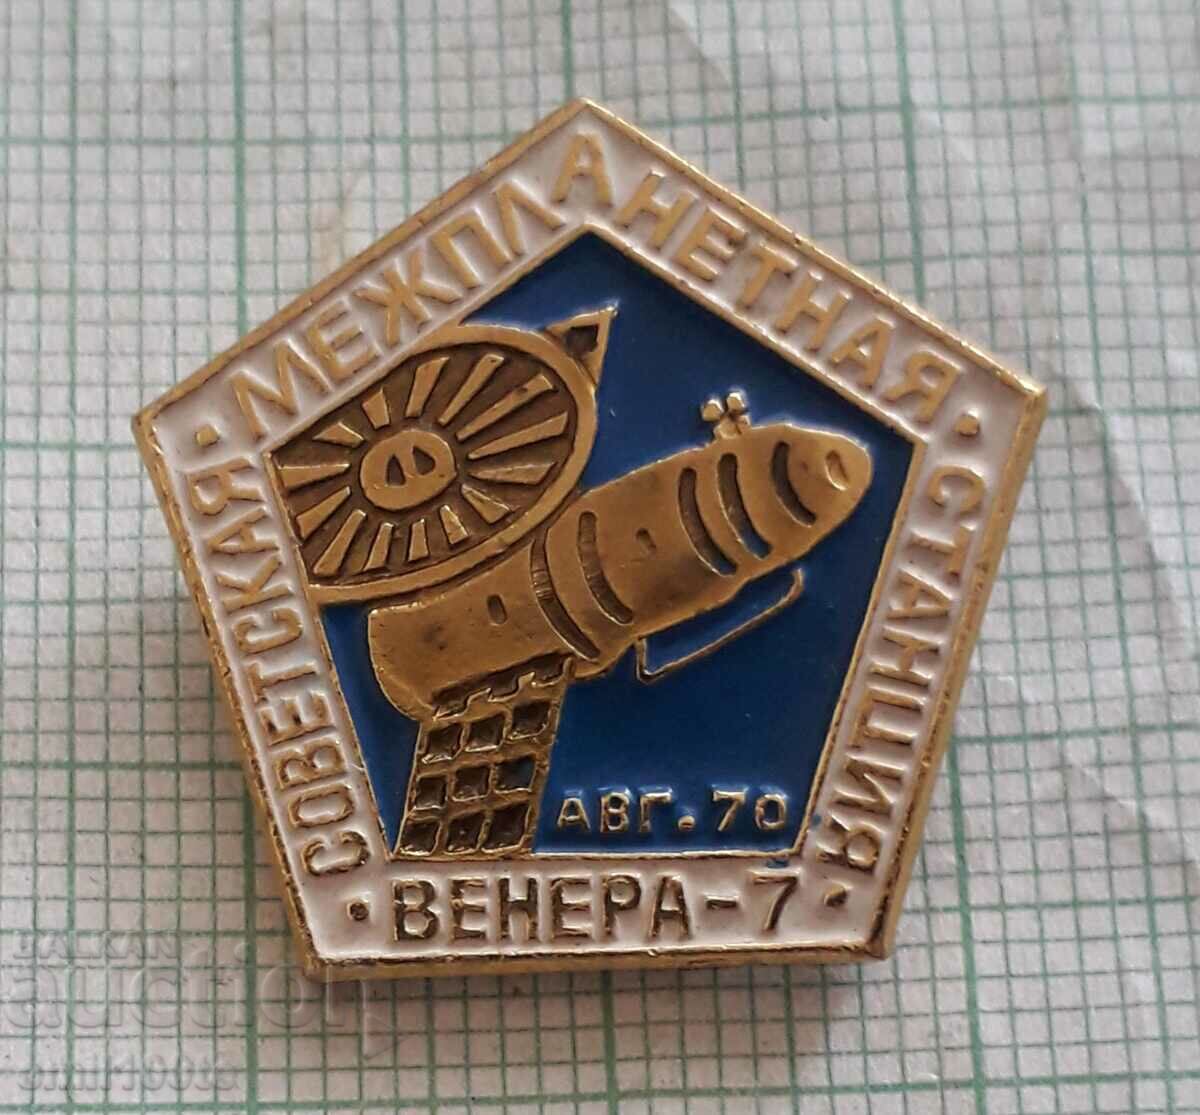 Σήμα - Venus 7 Σοβιετικός Διαπλανητικός Σταθμός Αύγουστος 1970